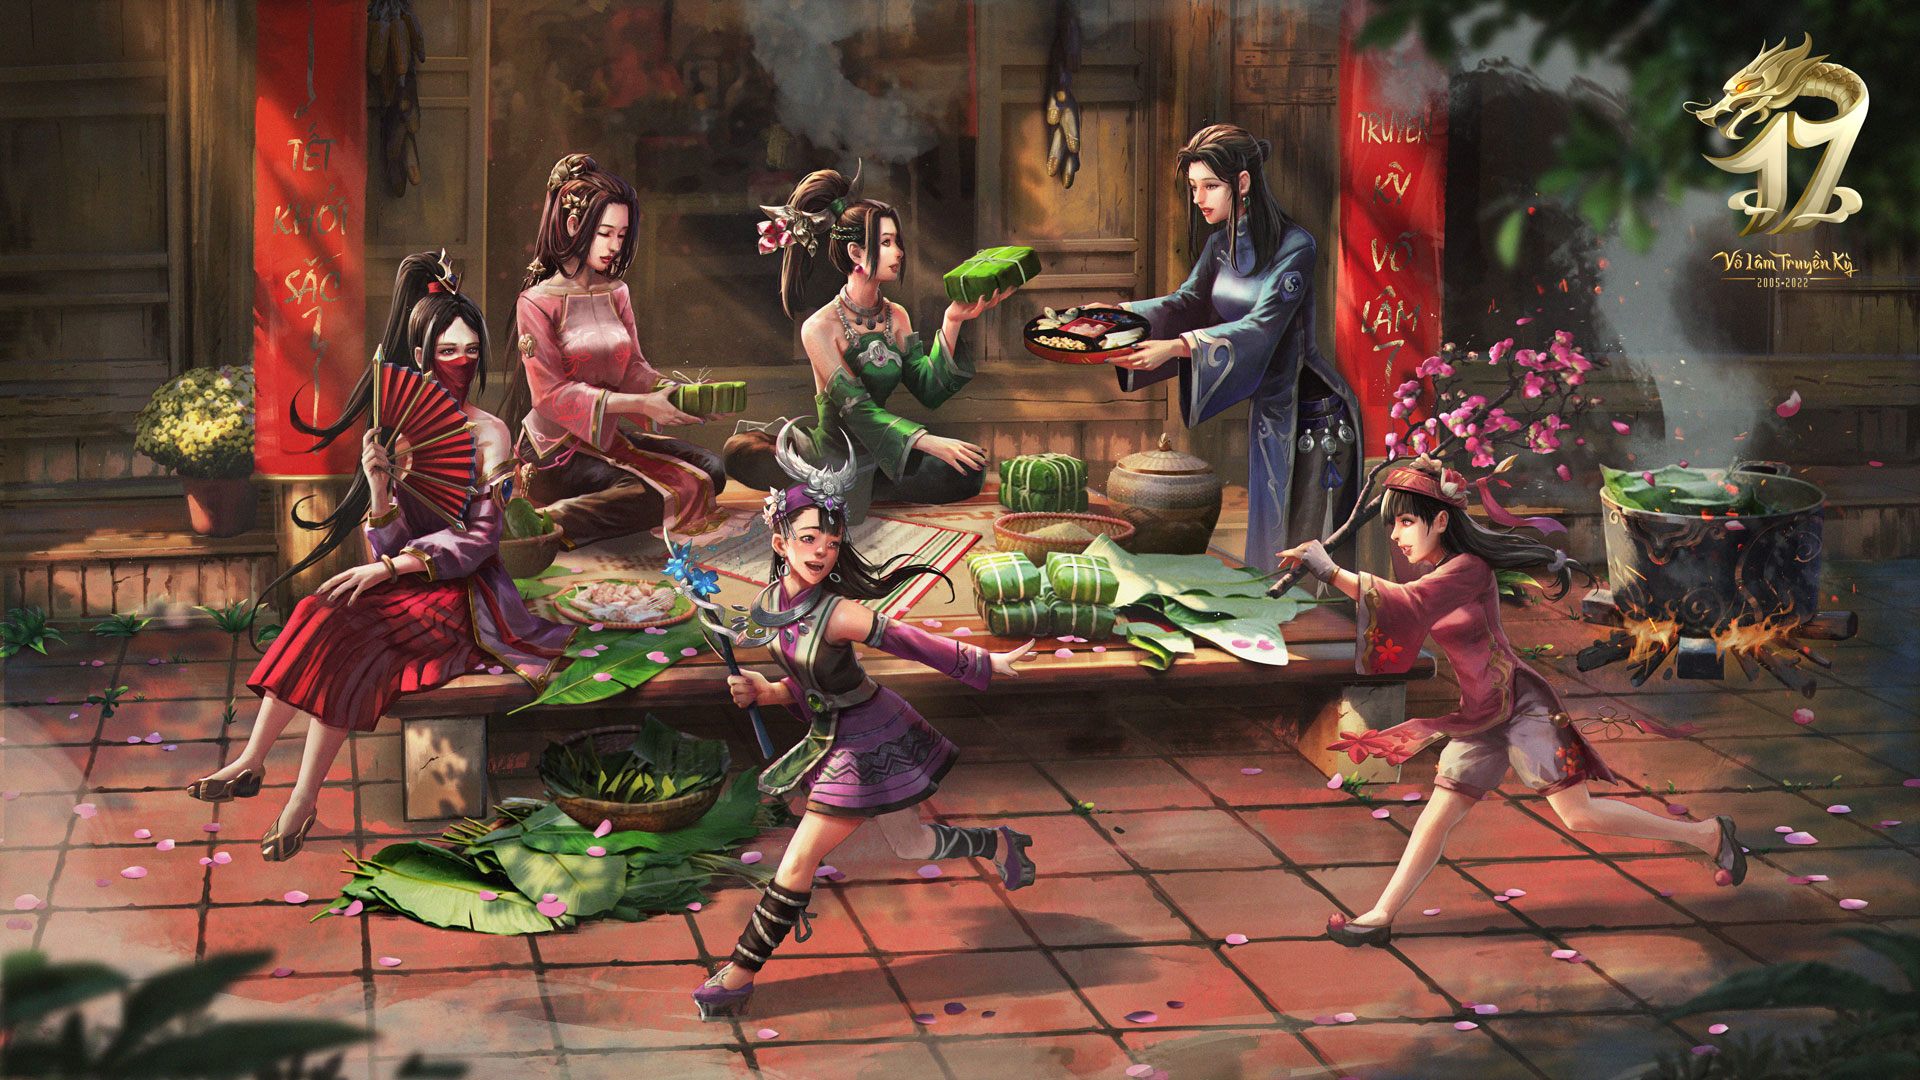 Hương vị Tết cổ truyền đặc sắc trong bộ ảnh của dòng game Võ Lâm Truyền Kỳ